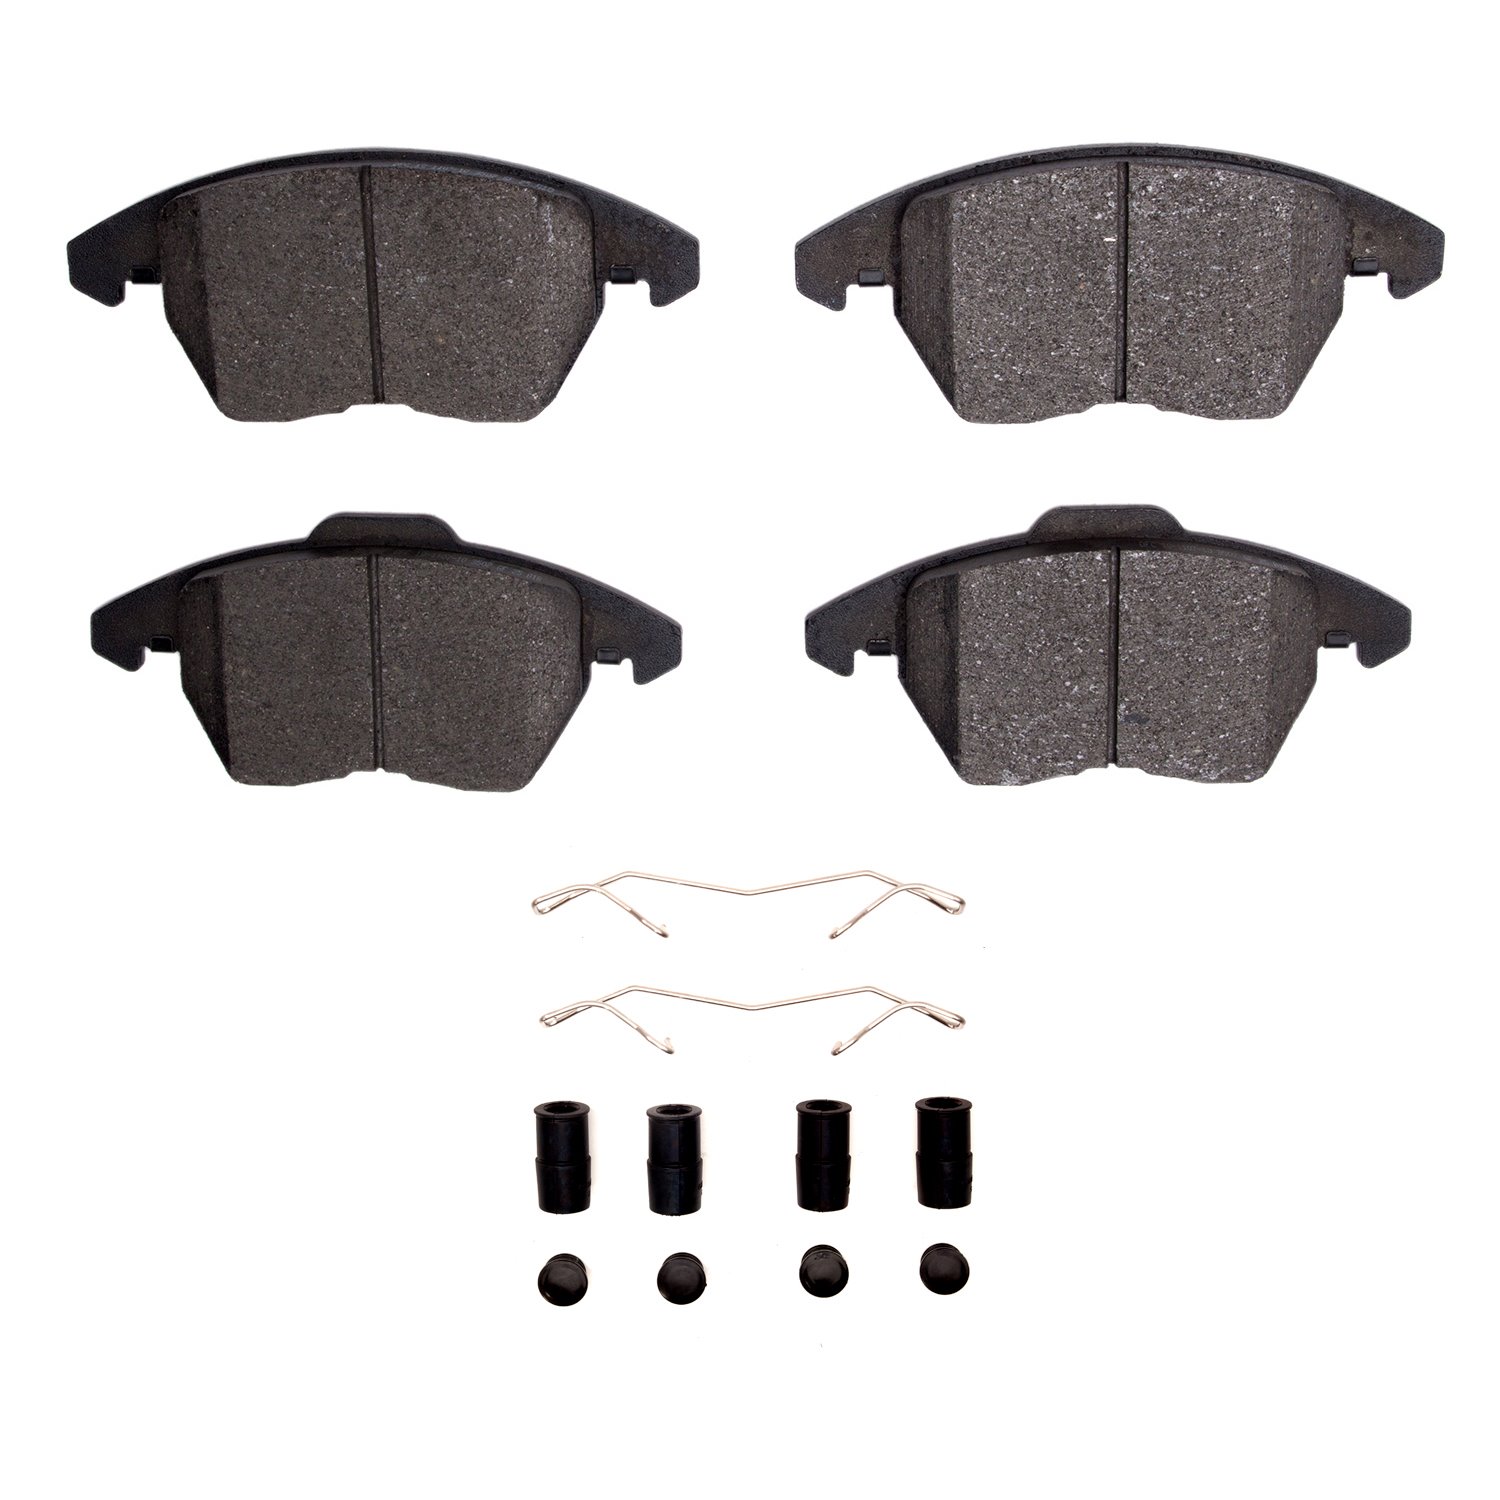 Semi-Metallic Brake Pads & Hardware Kit, 2011-2015 Peugeot, Position: Front